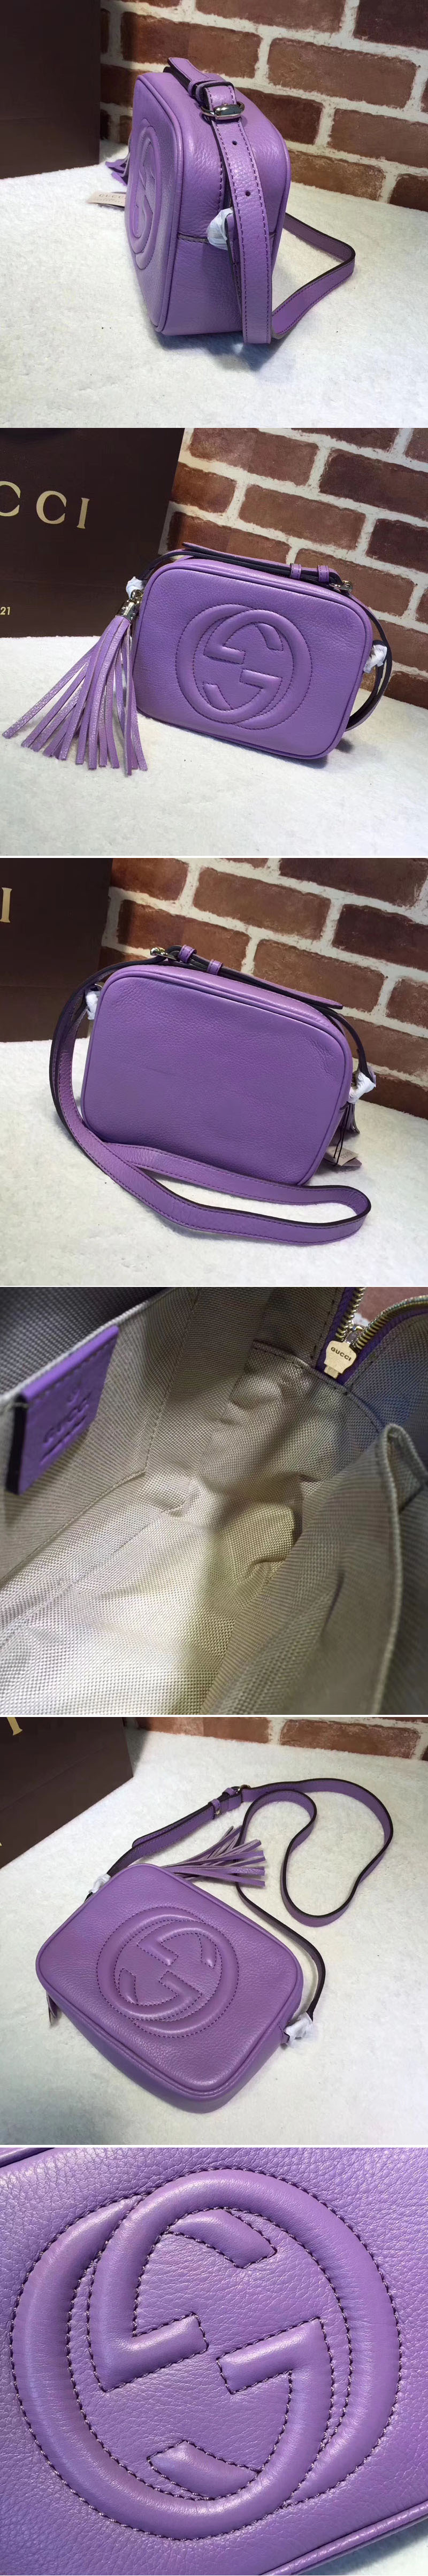 Replica Gucci 308364 Soho Leather Disco Bags Purple